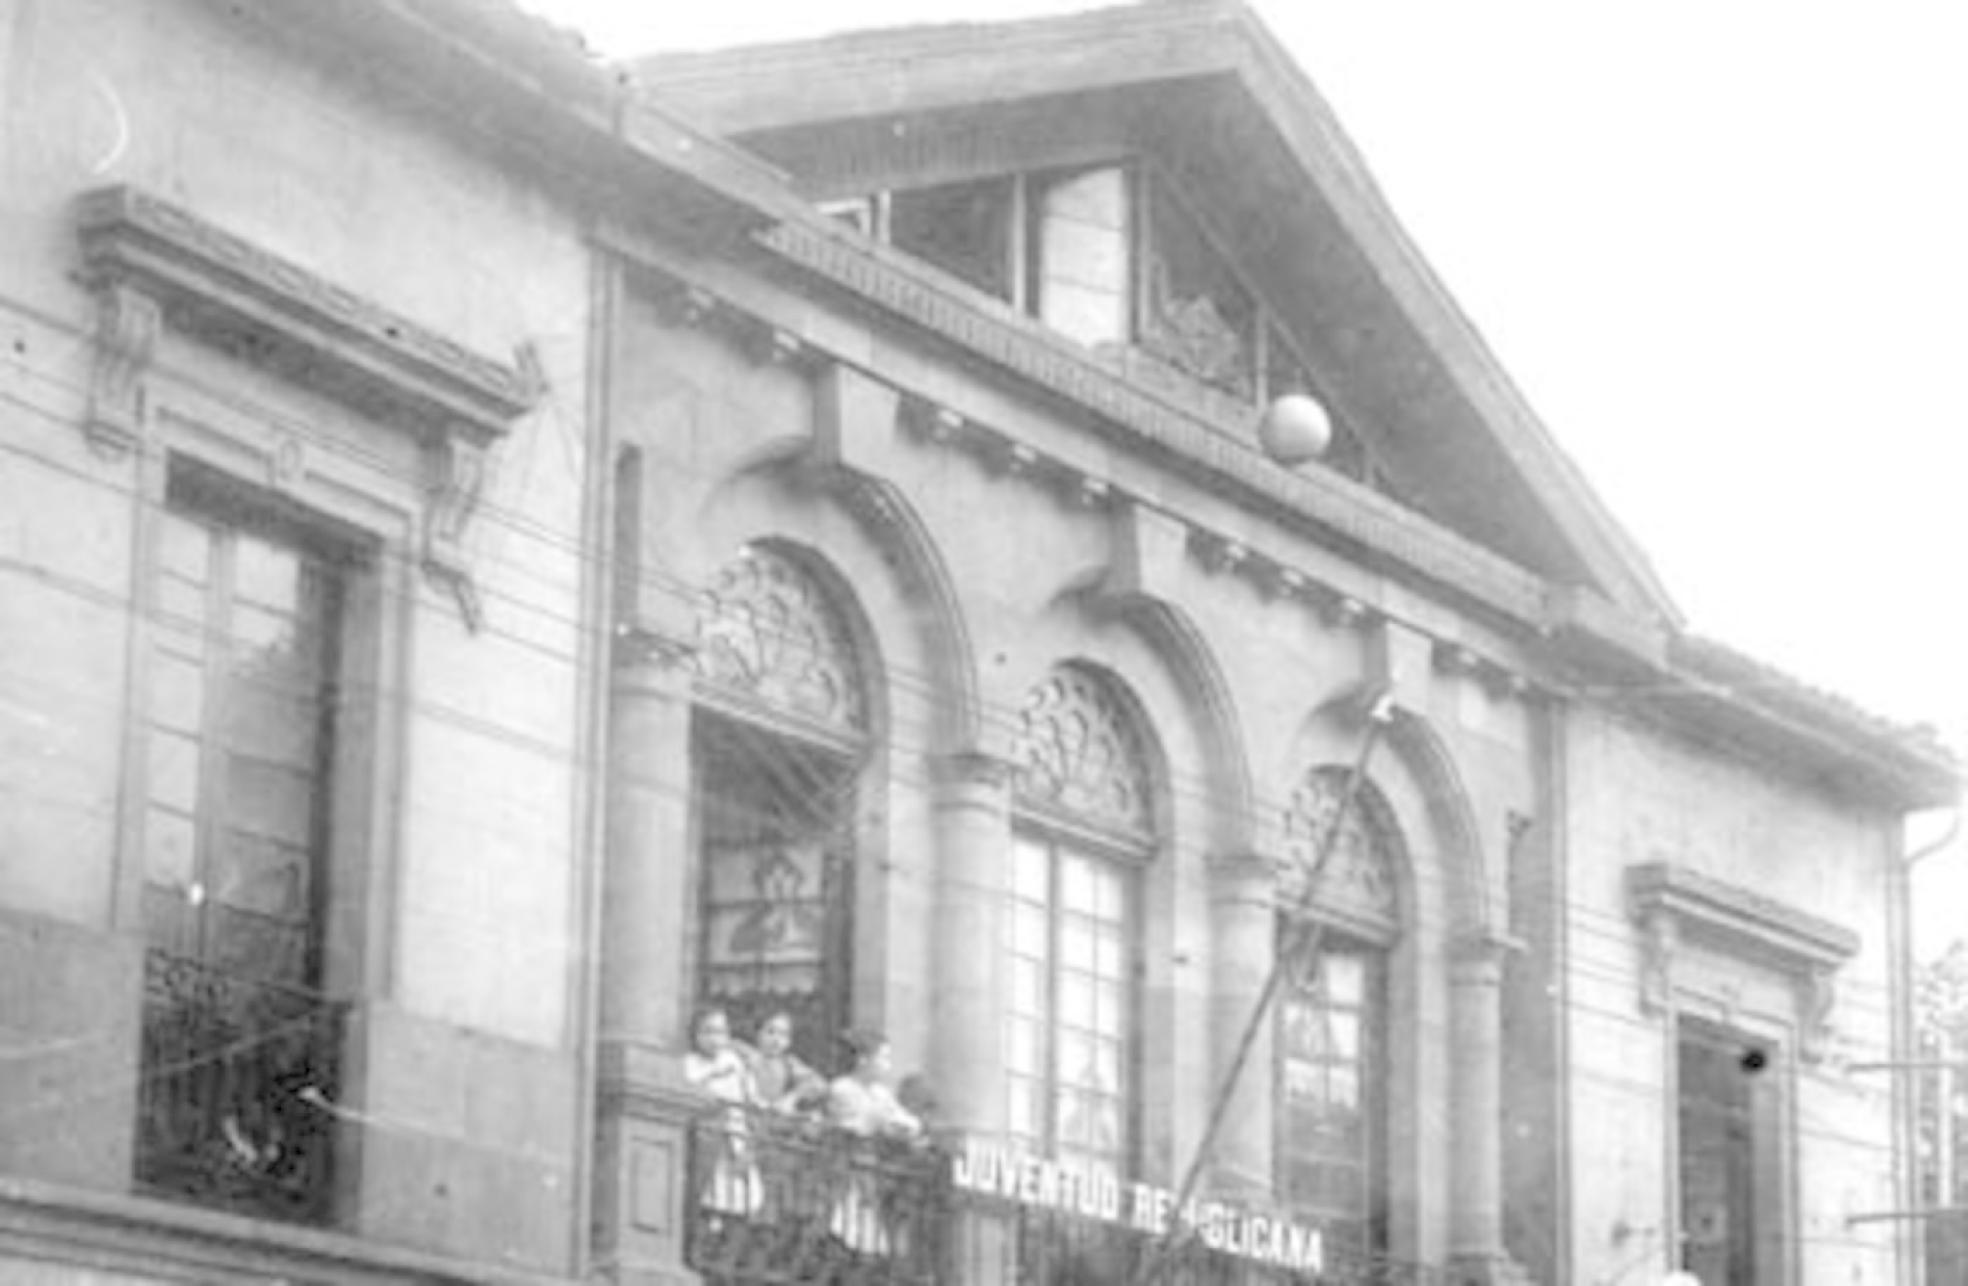 El Salón Teatro estaba situado en la calle Calbetón lindando con Unzaga. 